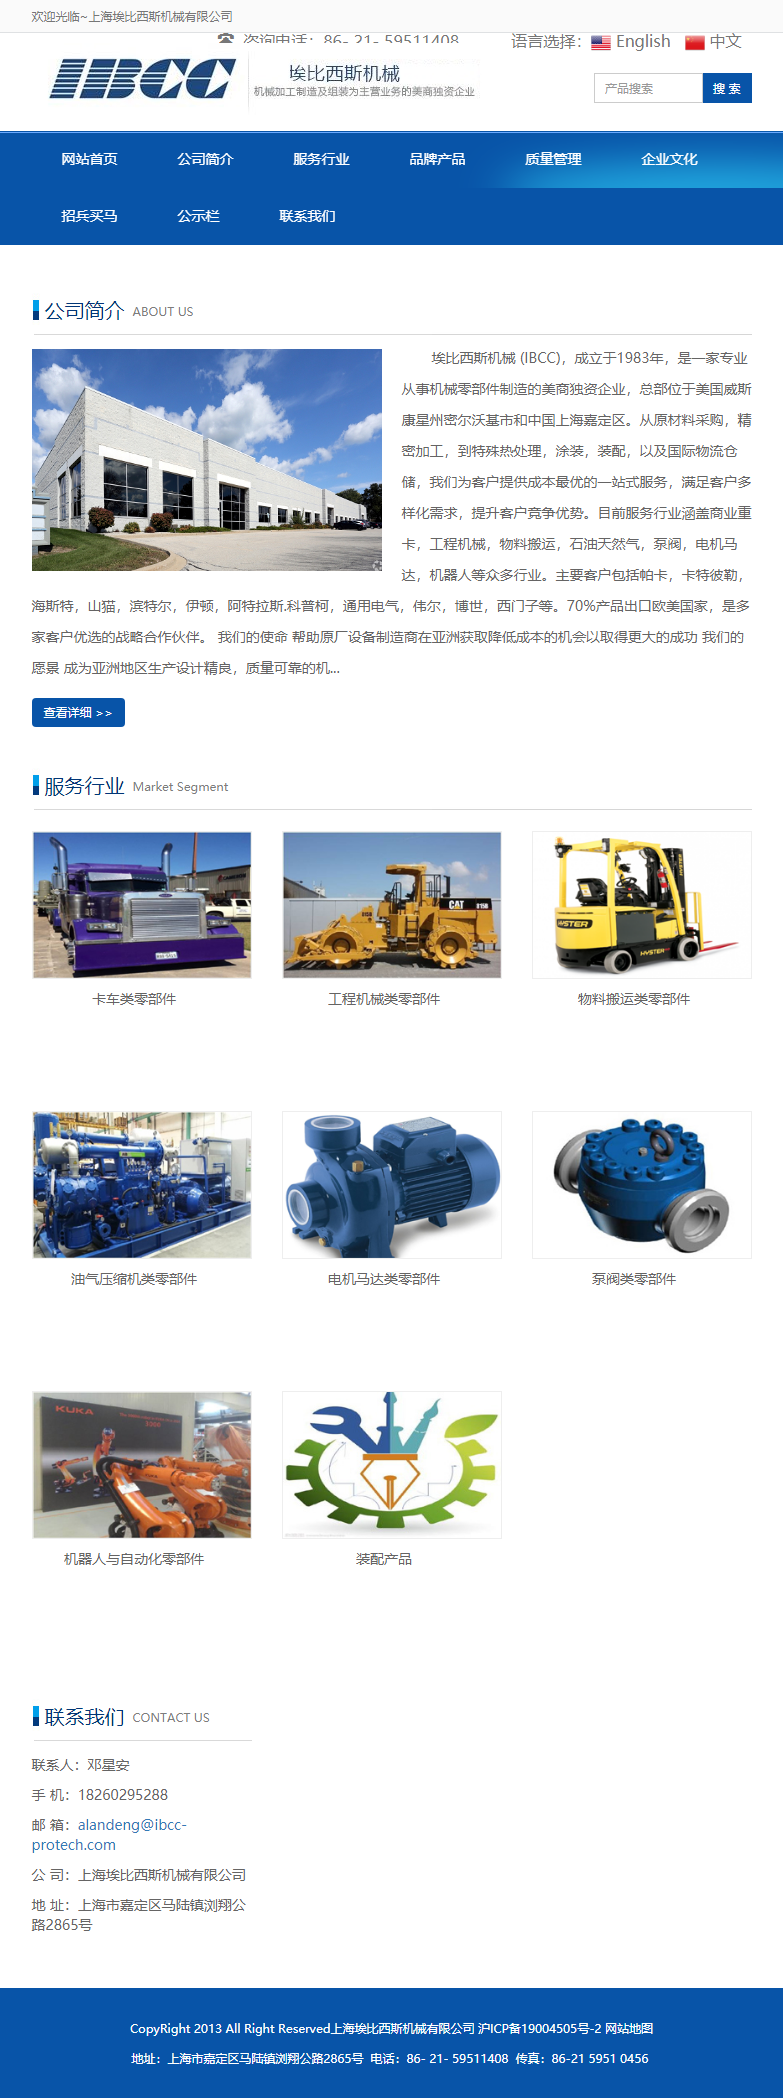 上海埃比西斯机械有限公司网站案例